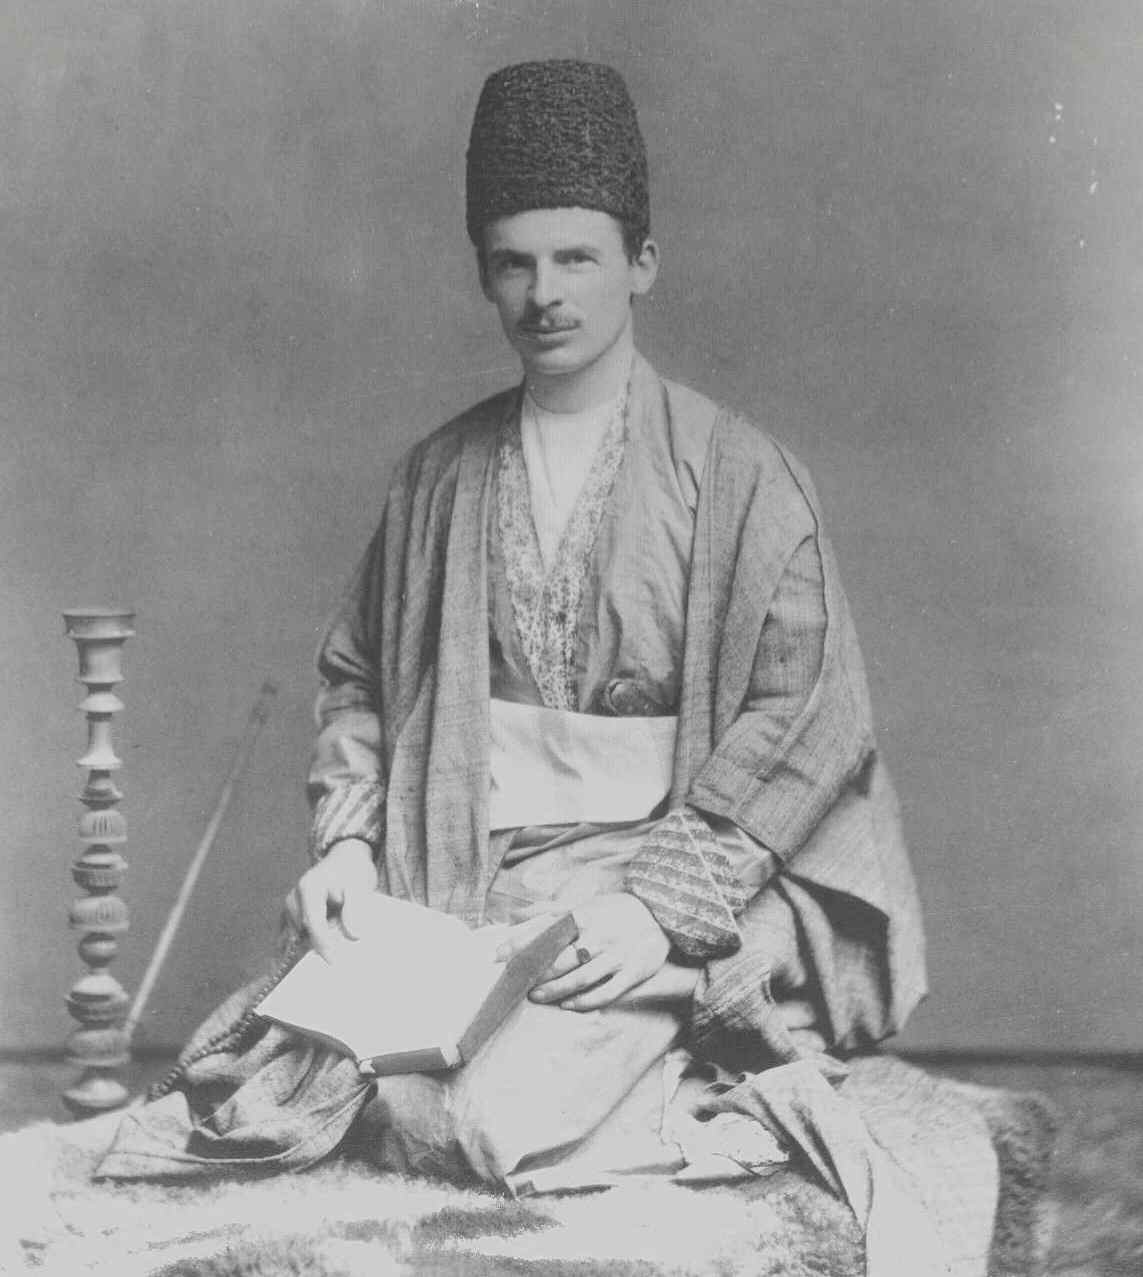 Browne in Persian robes